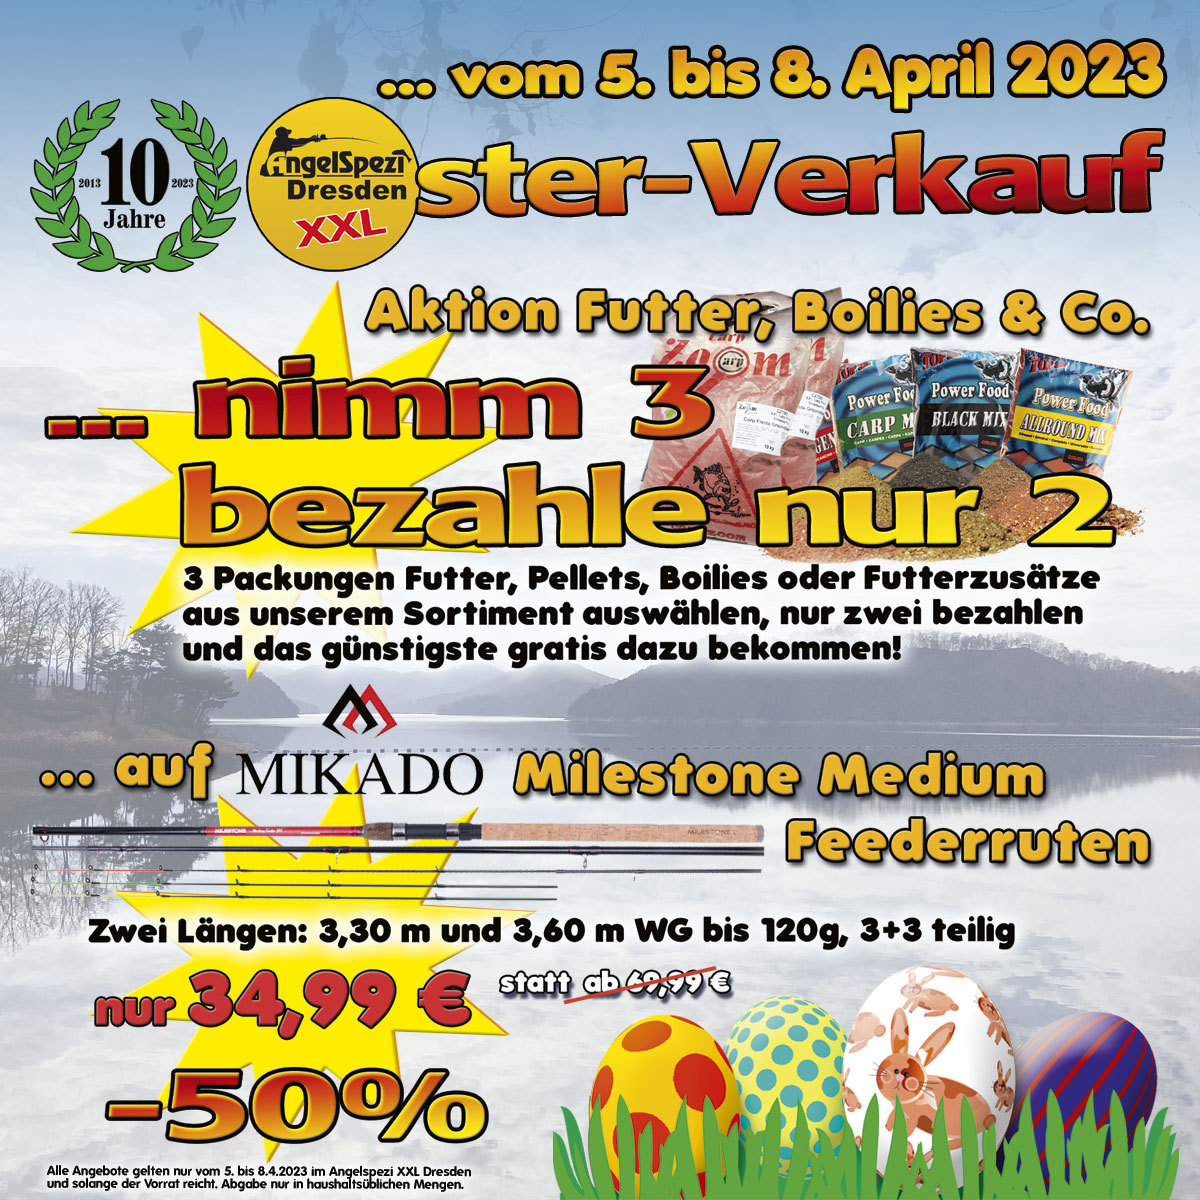 Jubiläums-Osterverkauf vom 5. bis 8. April 2023 im Angelspezi XXL Dresden